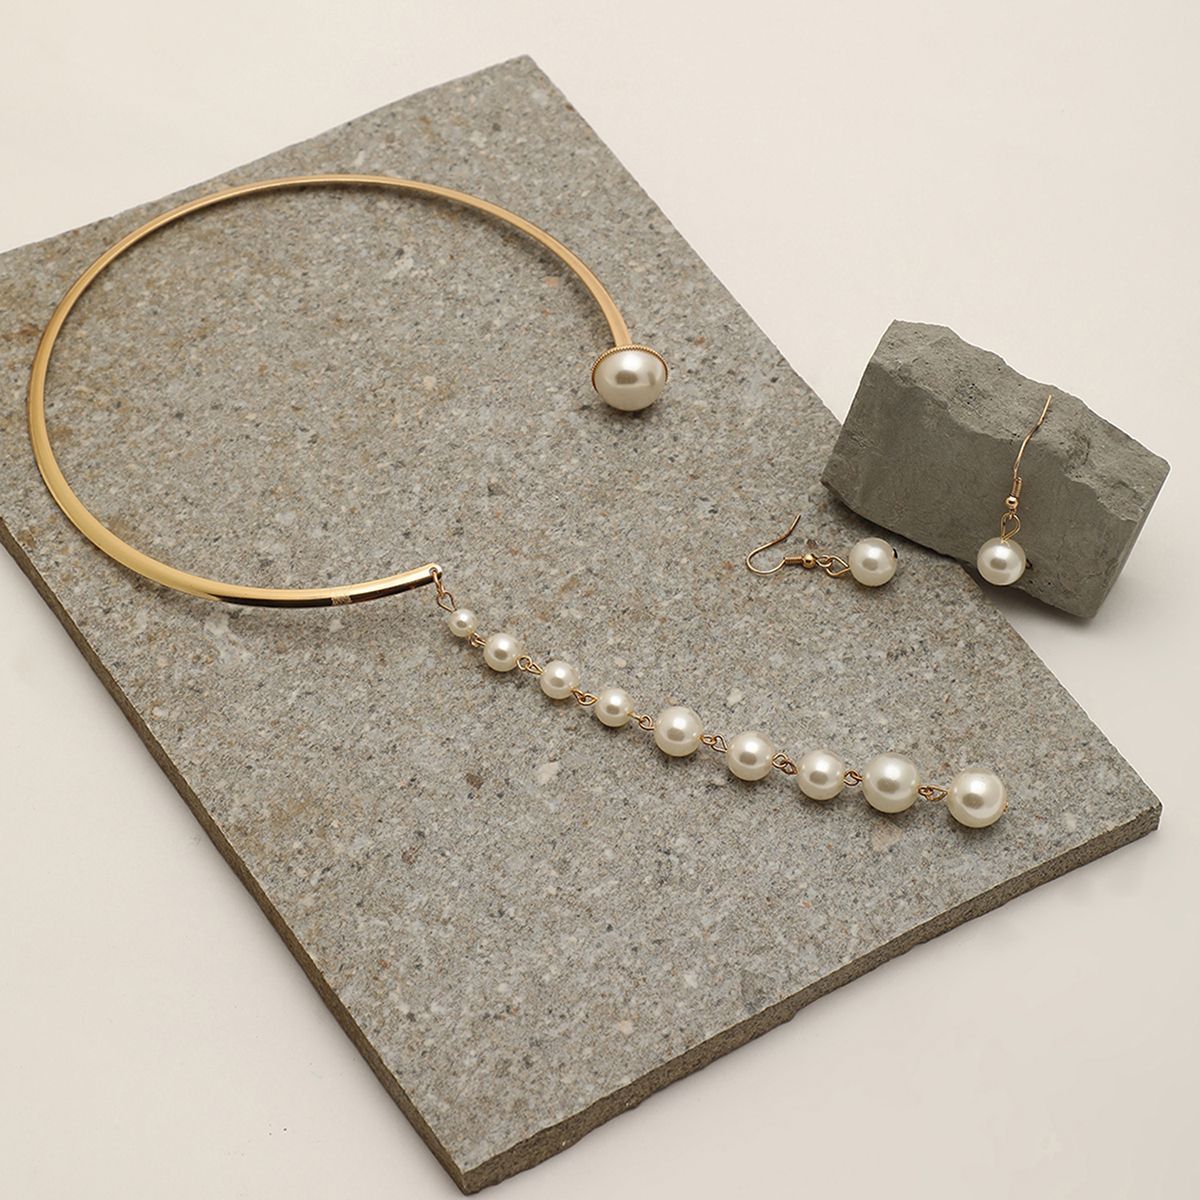 Aegte Ocean of Pearls Premium Necklace